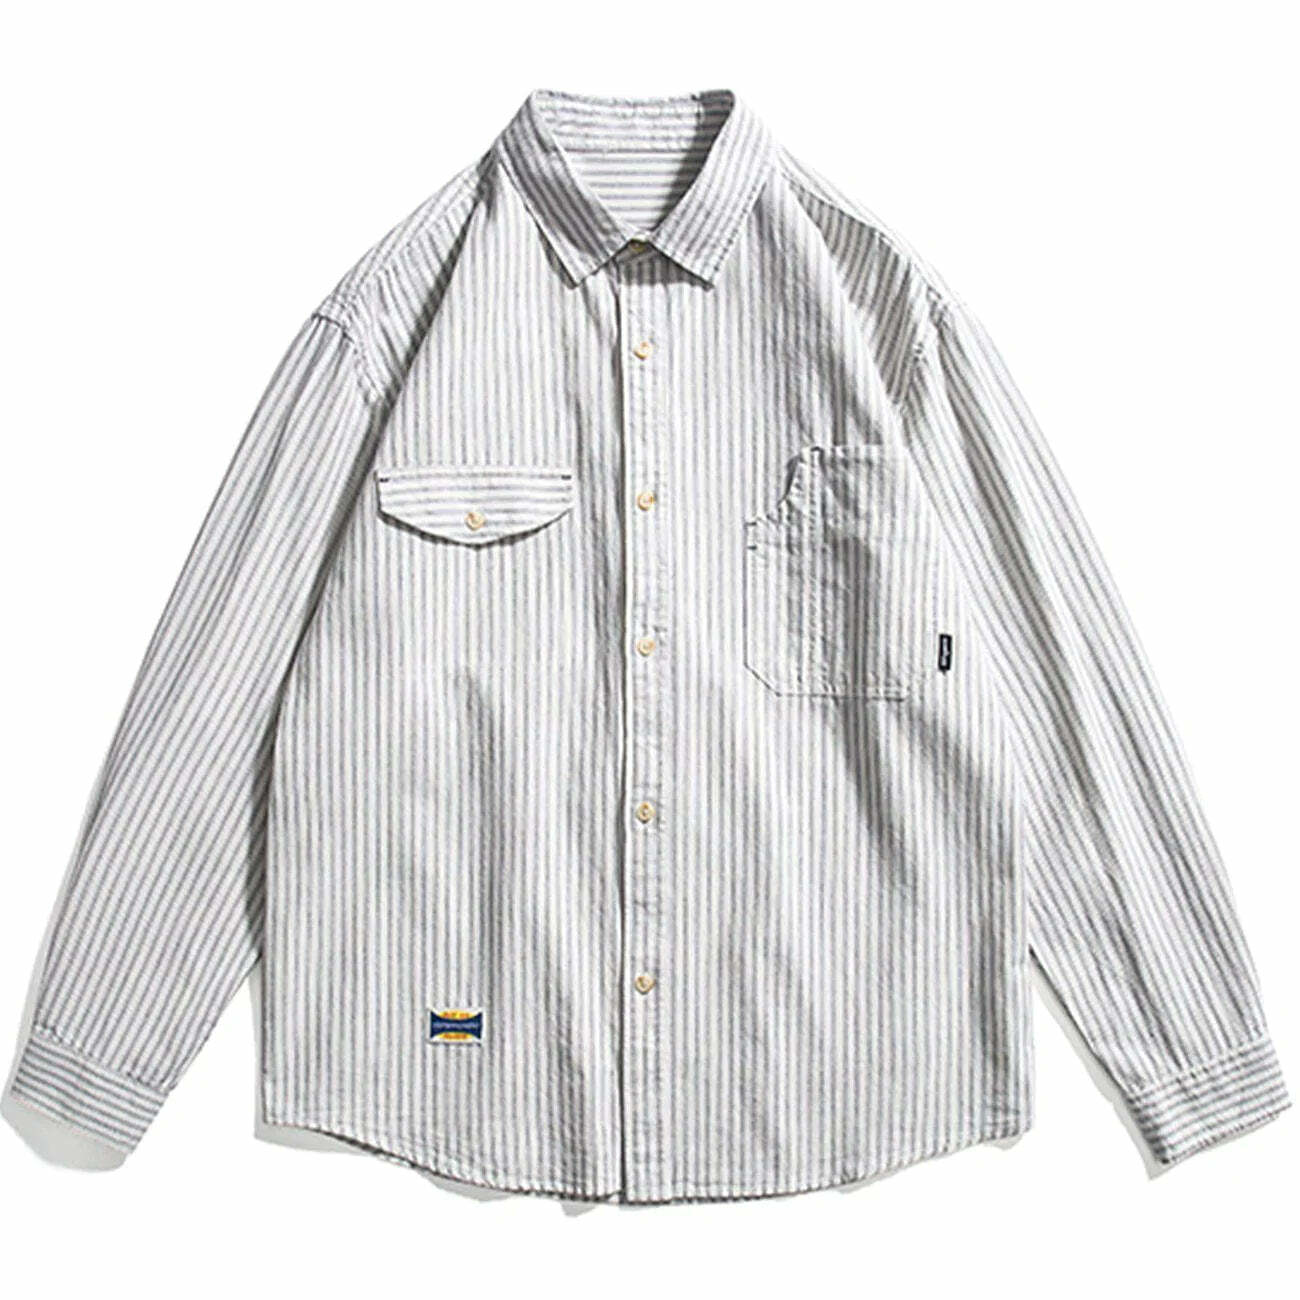 longline longsleeved shirt edgy & urban streetwear 5735